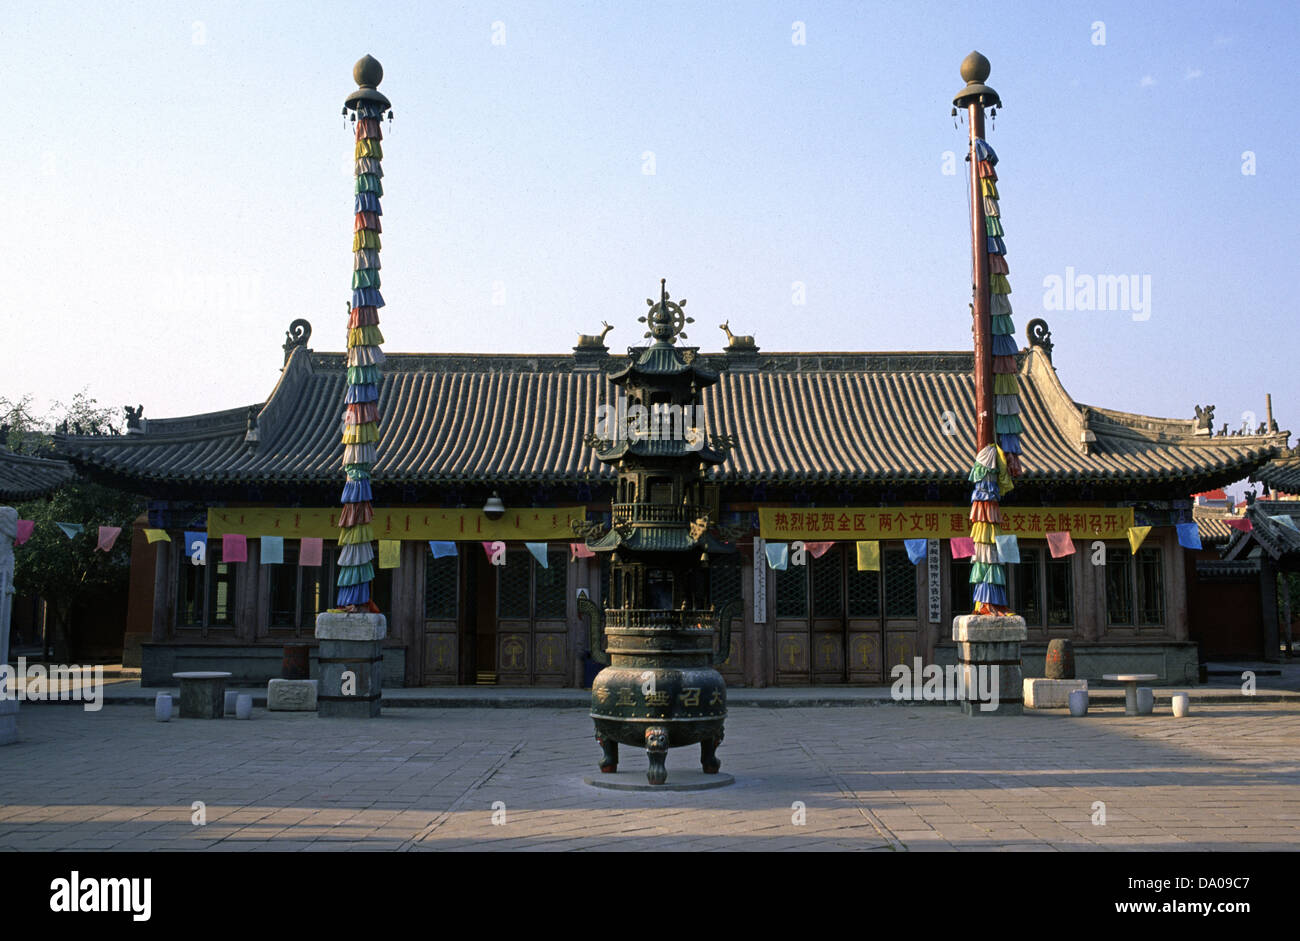 Encens Ding en face de Ih Juu ou Temple Da Zhao un monastère bouddhiste construit en 1579 à Hohhot capitale de la région autonome de Mongolie intérieure. Chine Banque D'Images